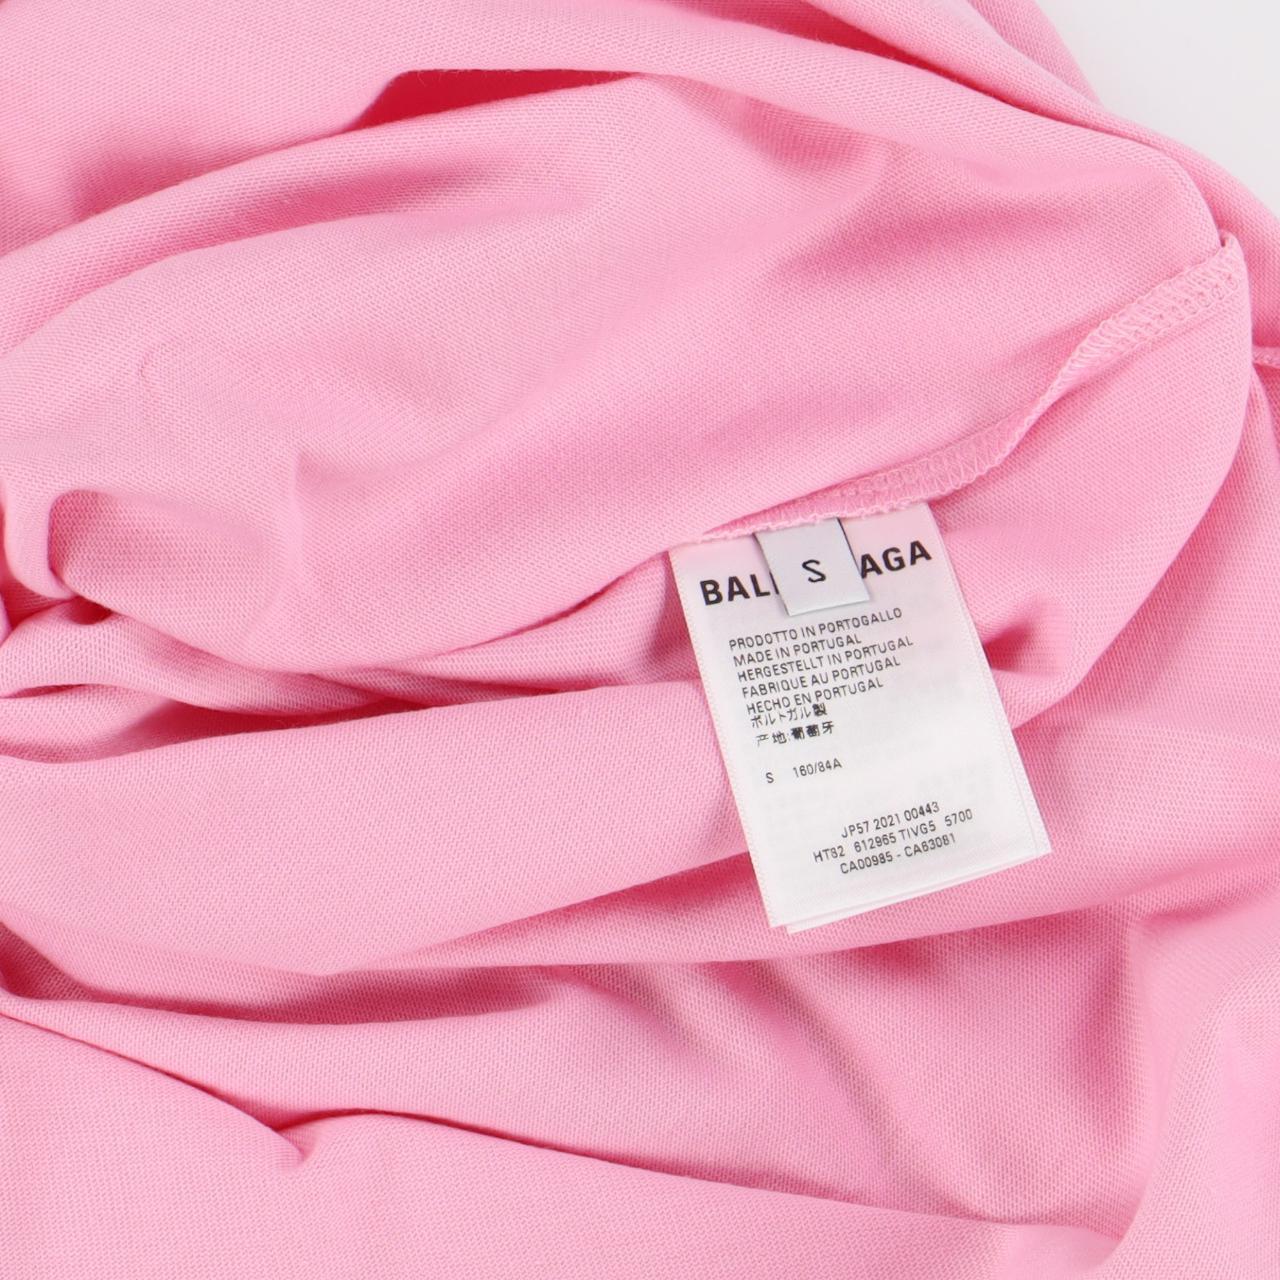 Product Image 4 - Balenciaga Pink Logo Print T-Shirt

-Size